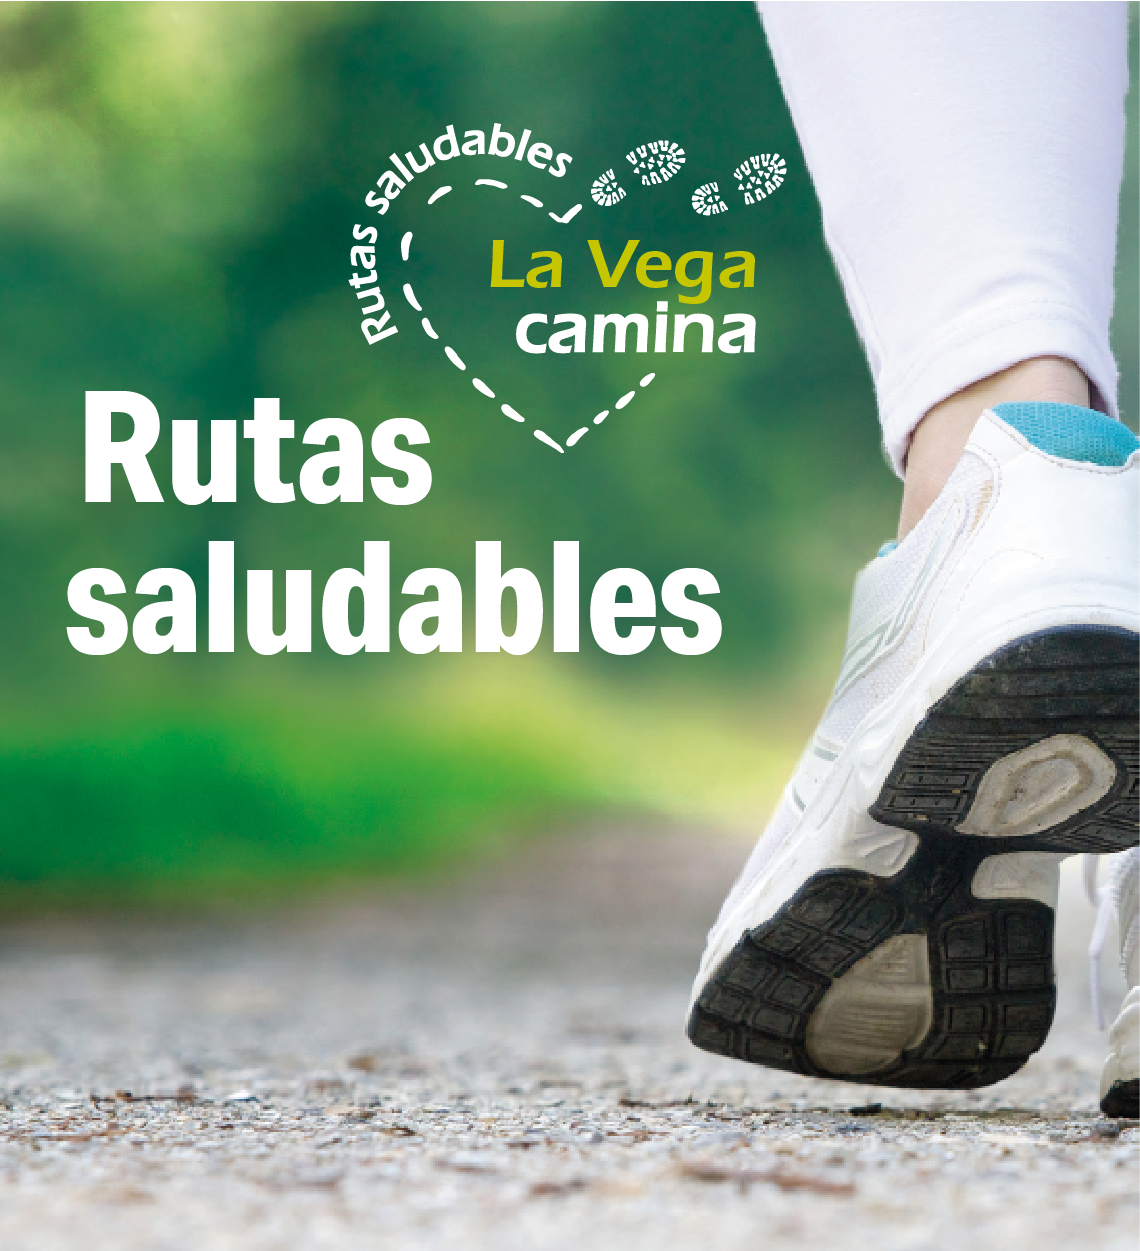 Mancomunidad la Vega impulsa el hábito de caminar mediante el plan de rutas saludables La Vega Camina